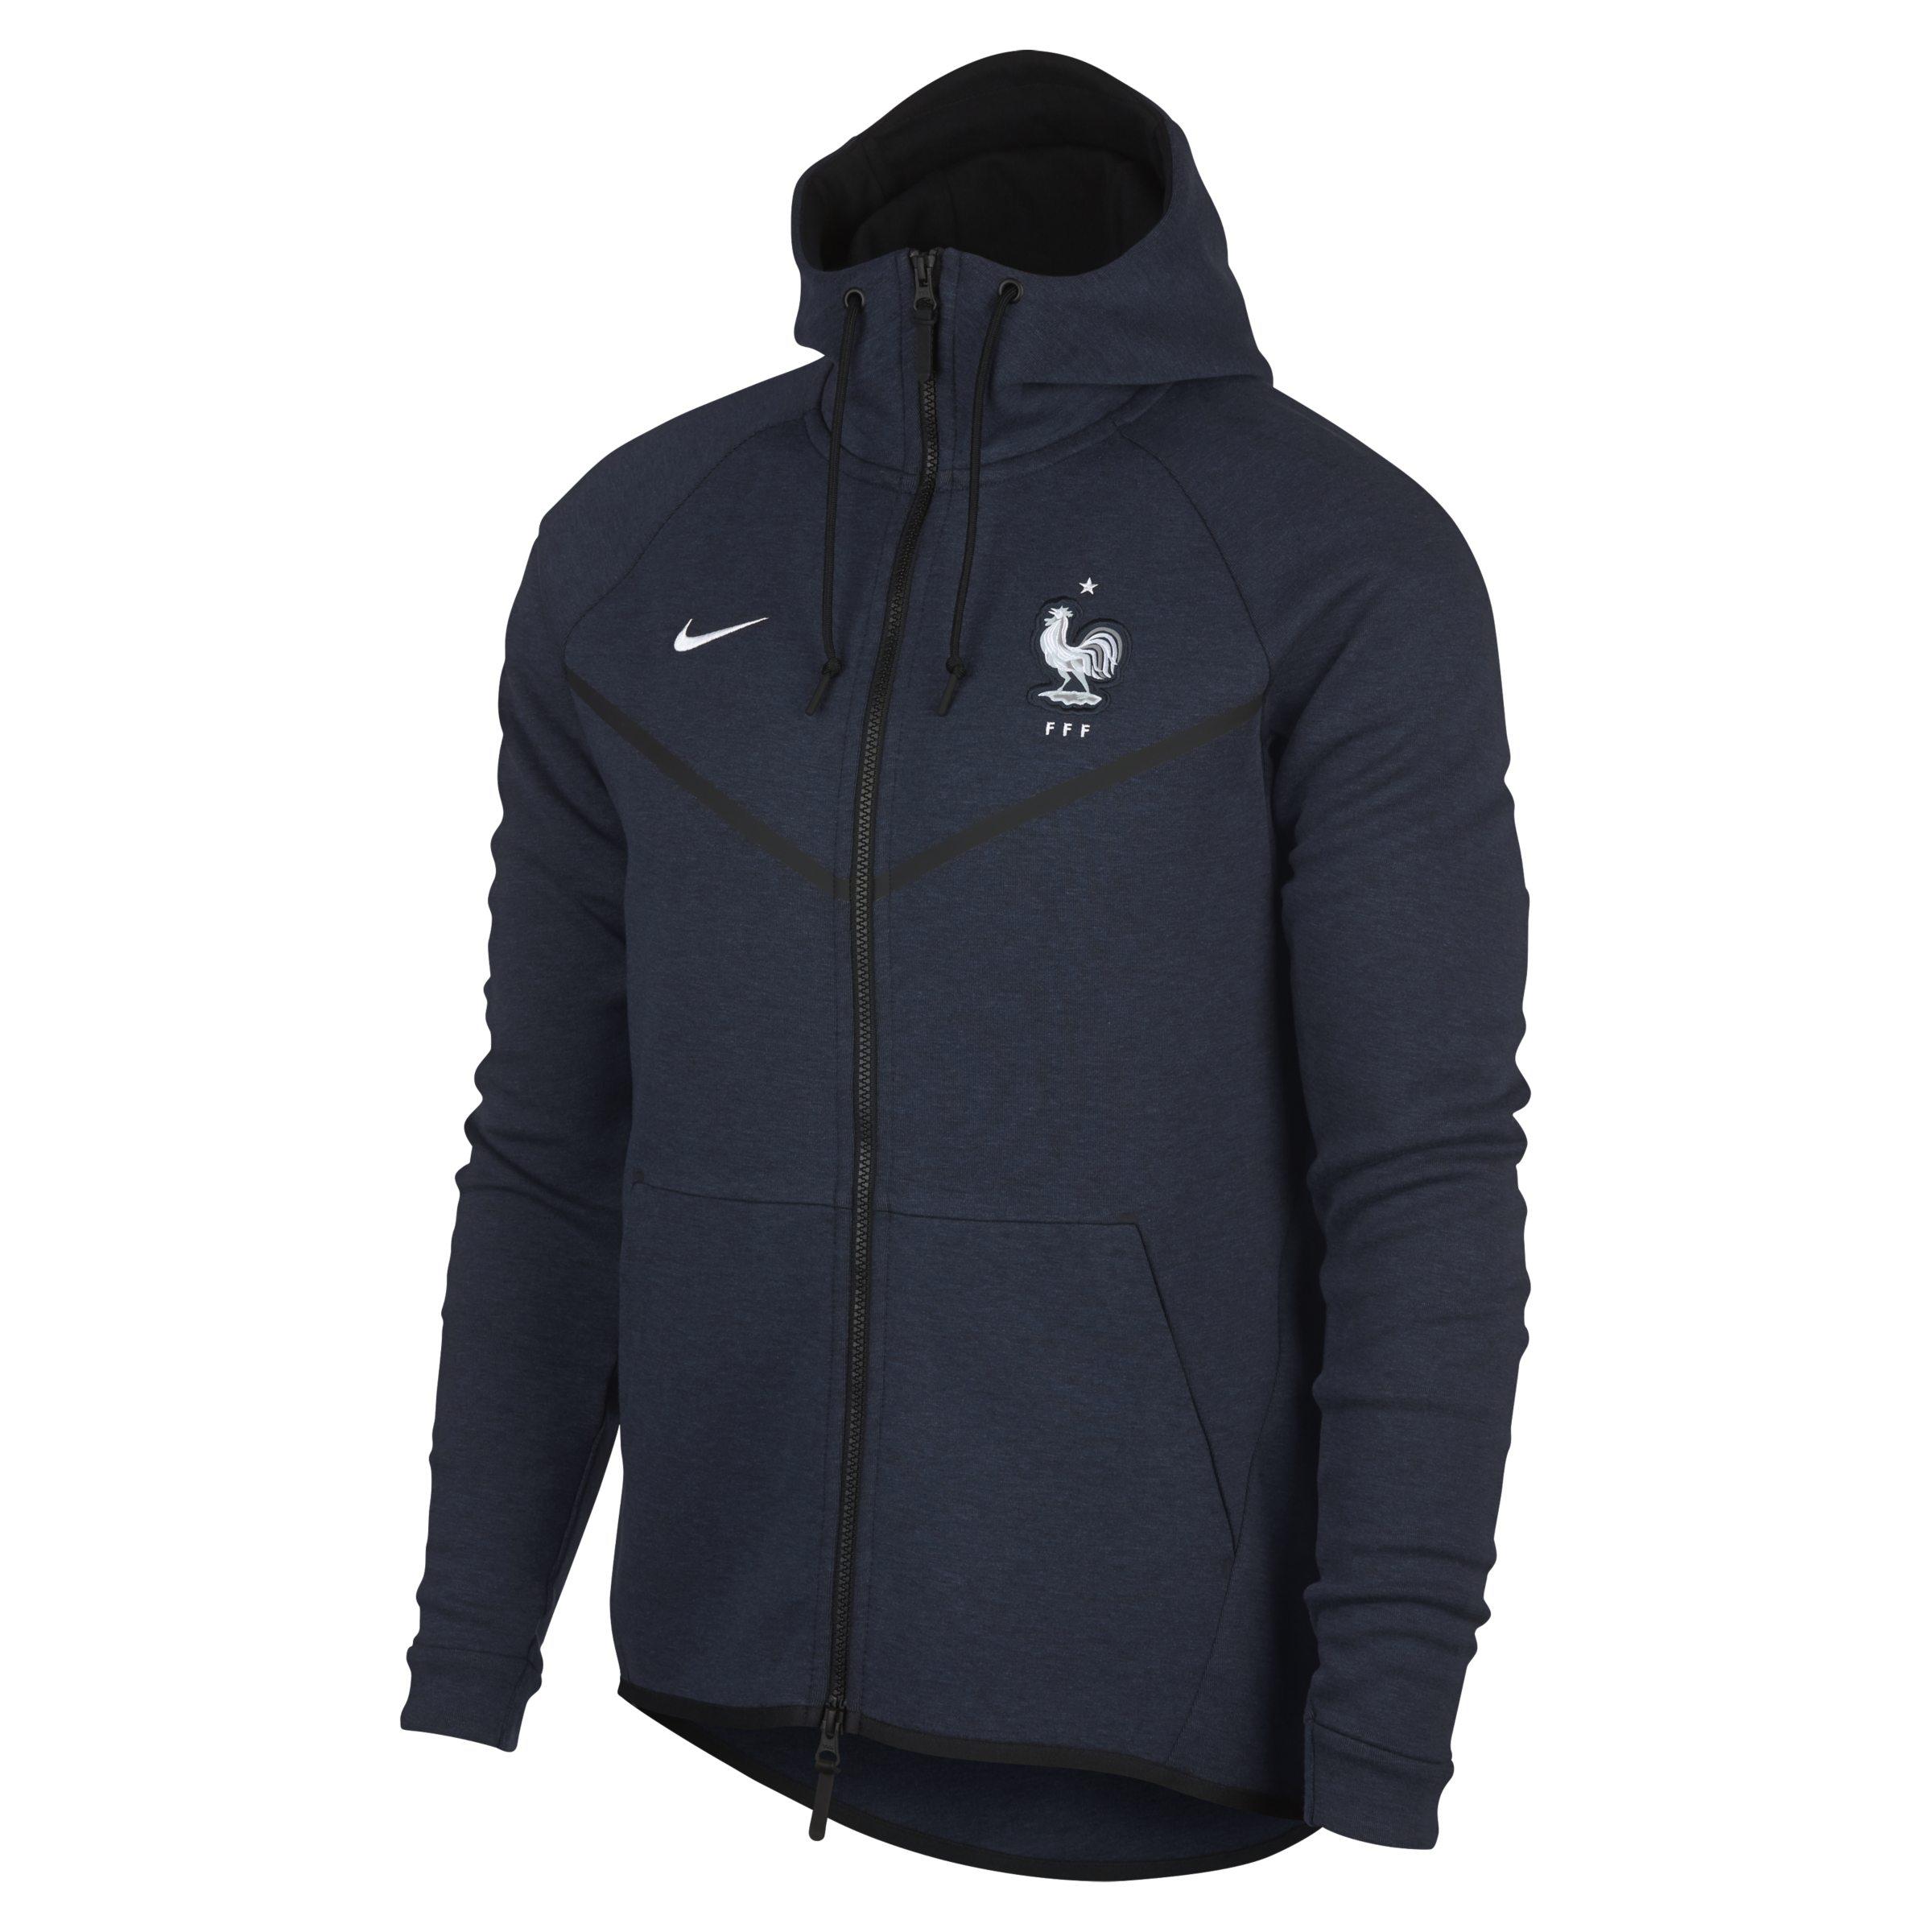 Nike Fff Tech Fleece Windrunner Jacket in Blue for Men - Lyst